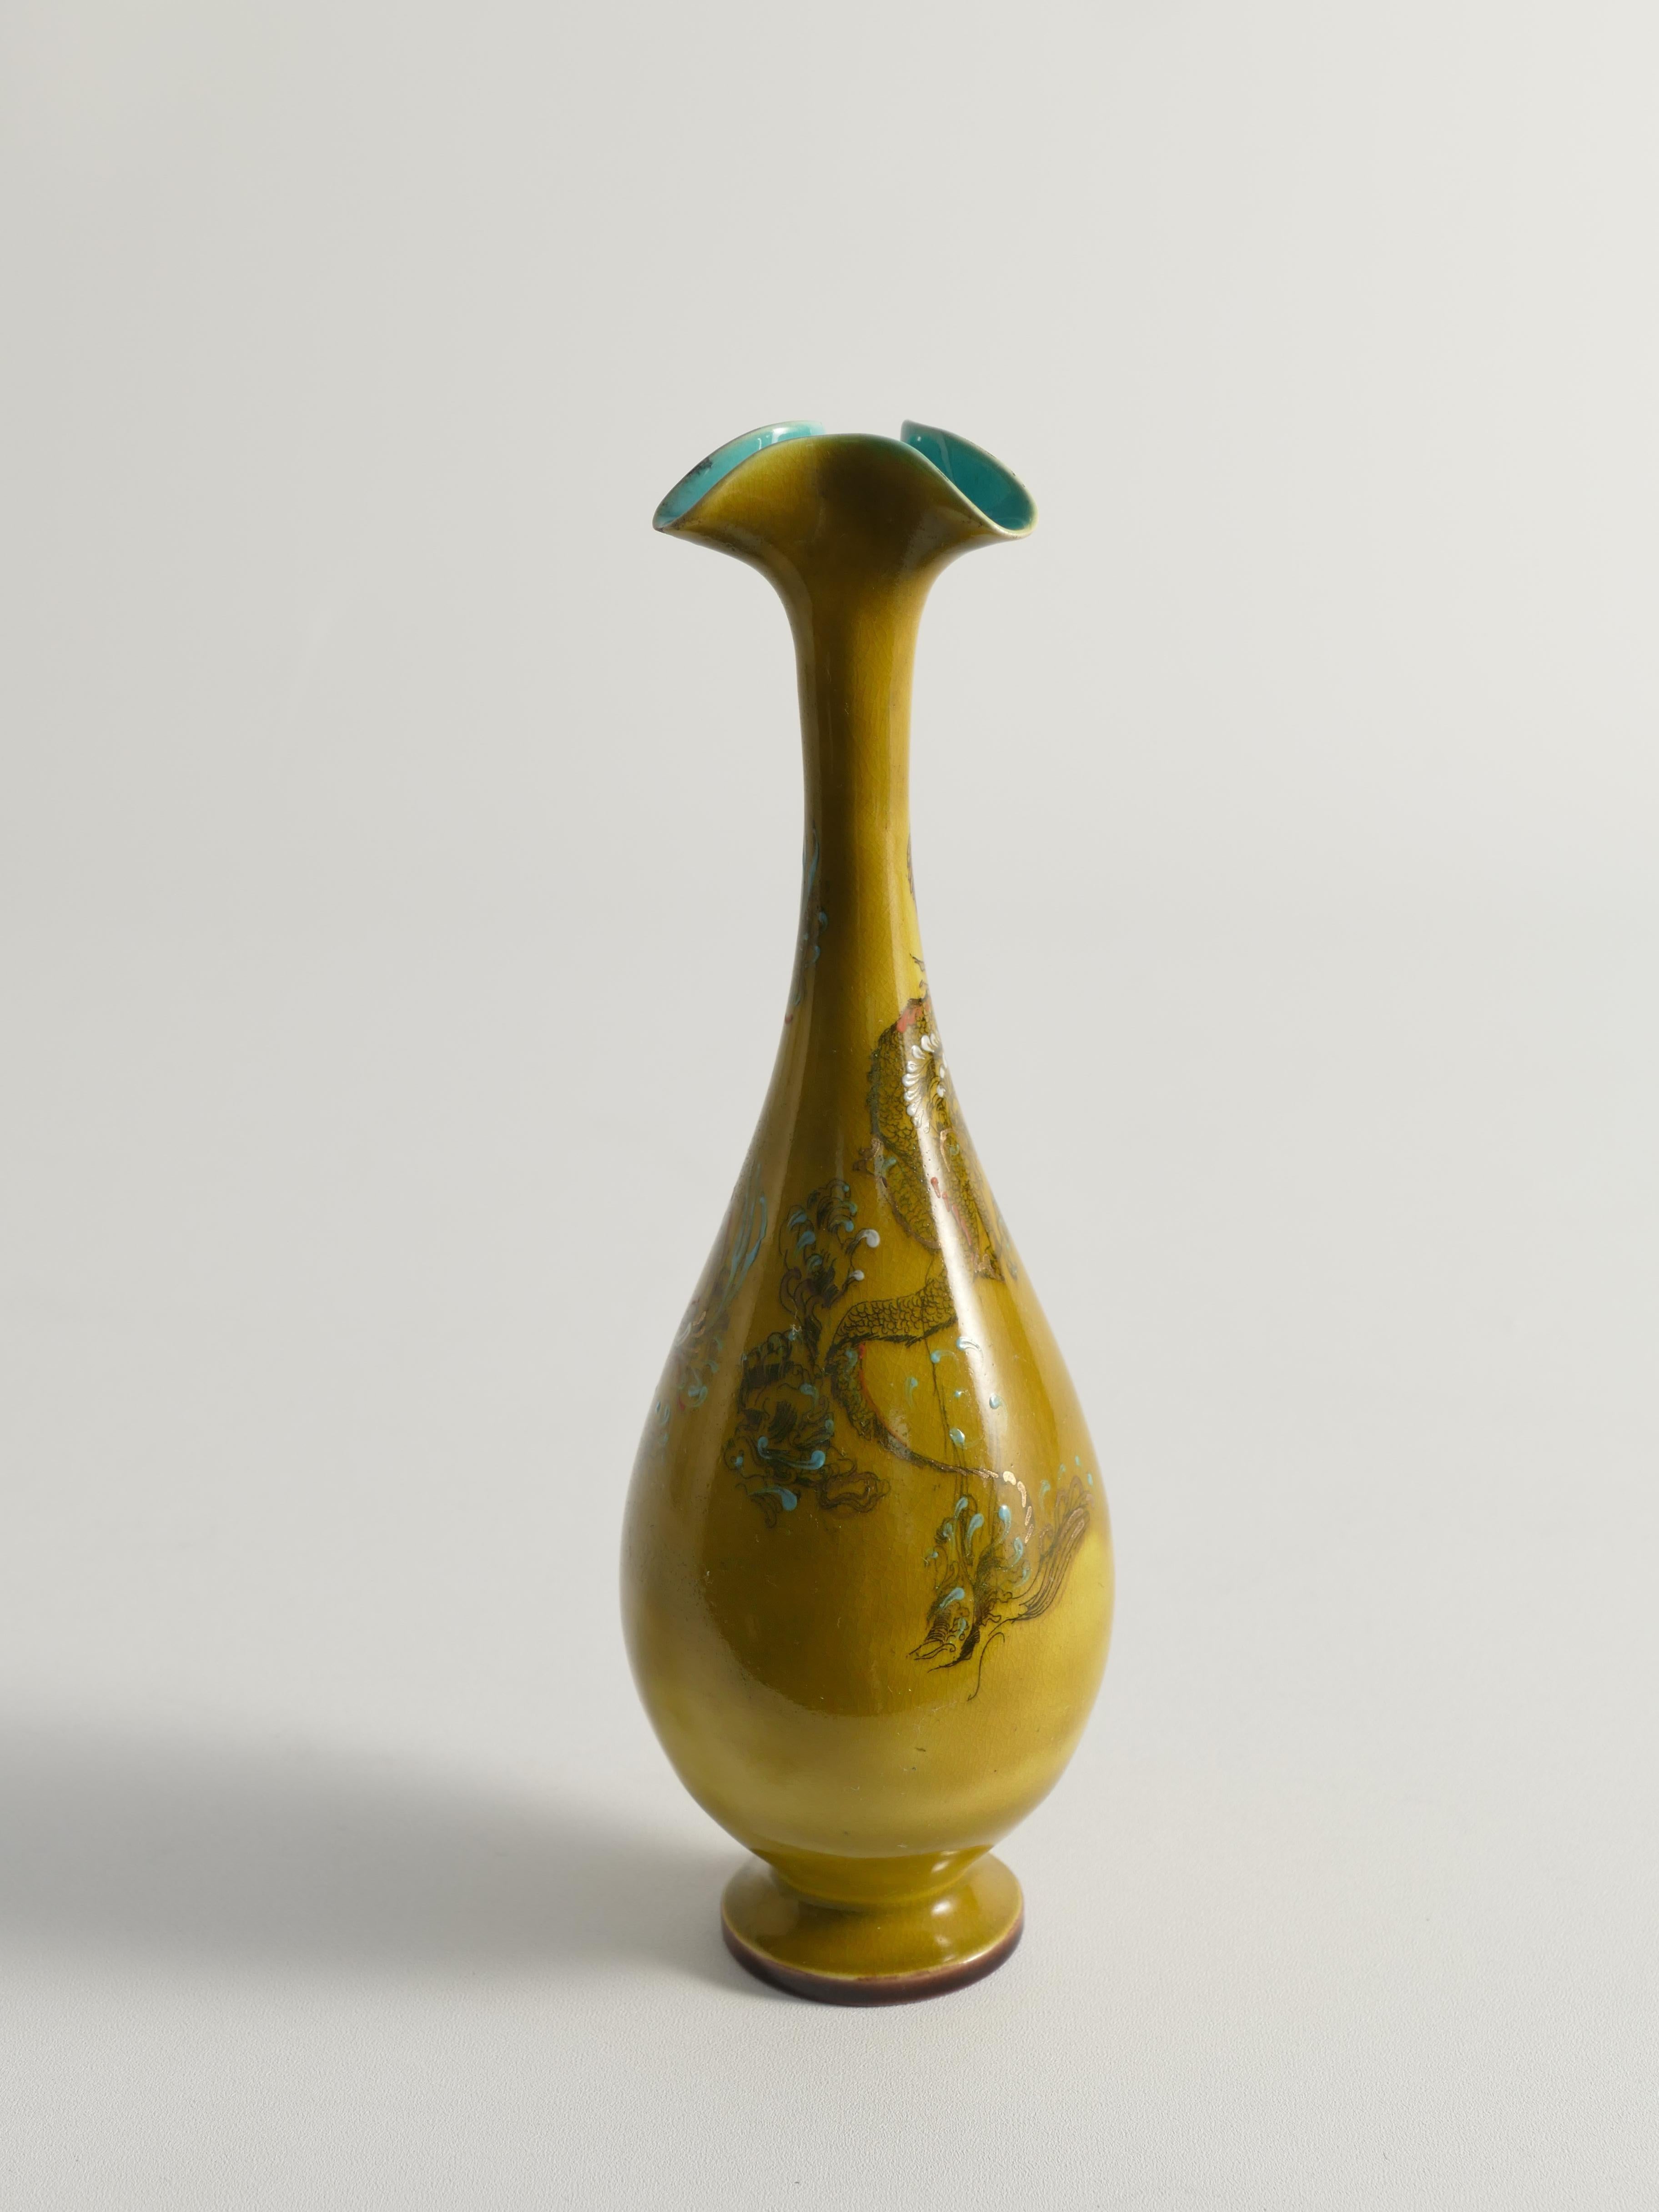 Vernissé Vase chinoiserie jaune ocre par Lambeth Doulton Faience, Angleterre, années 1880 en vente